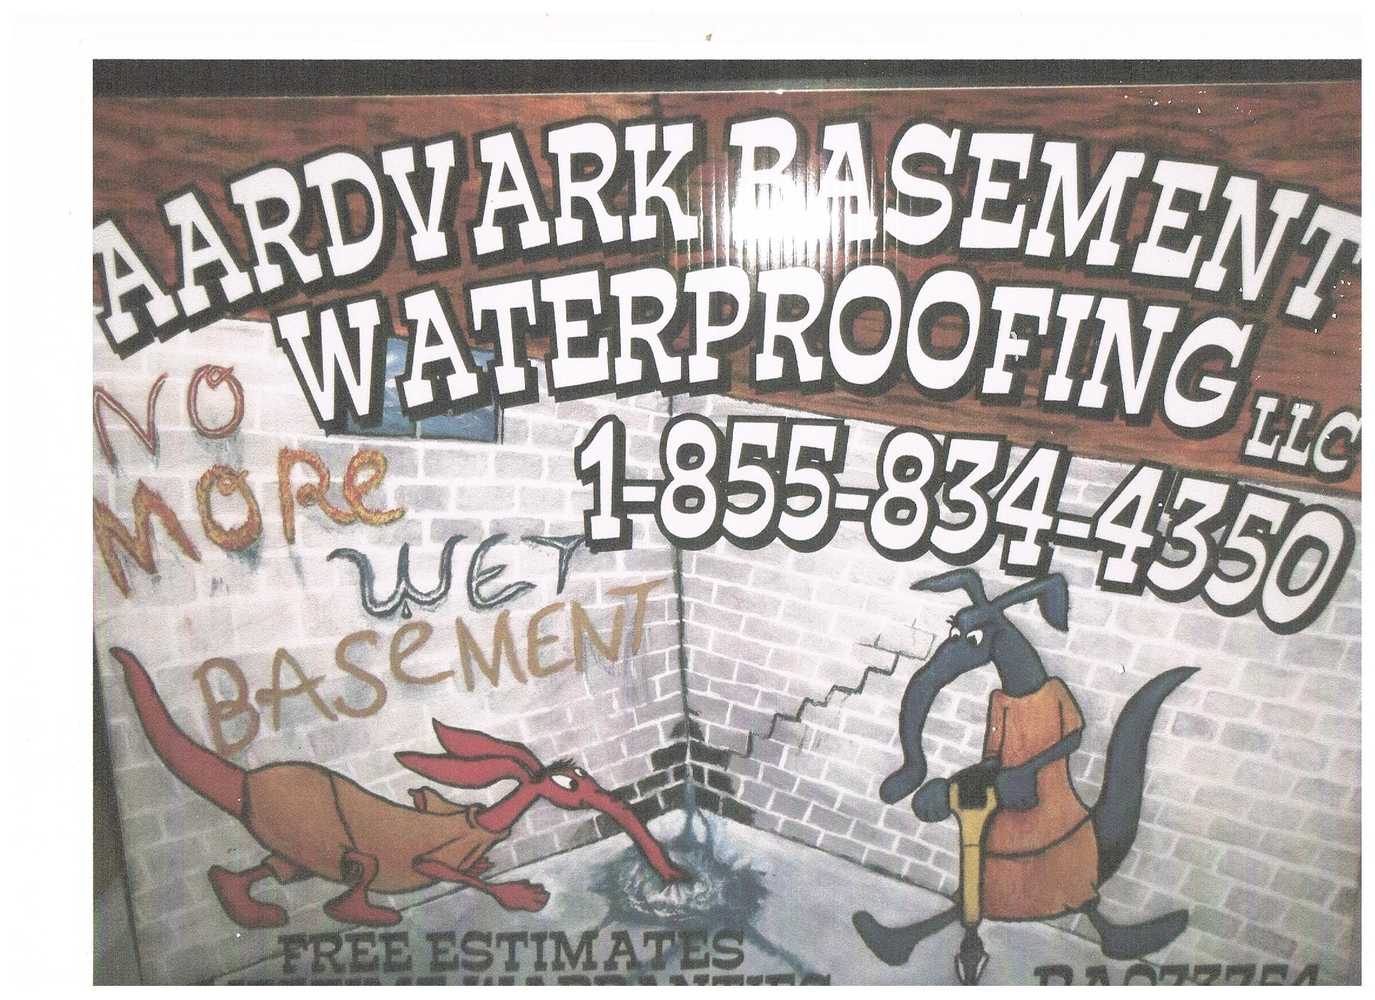 Aardvark Basement Waterproofing Project 1